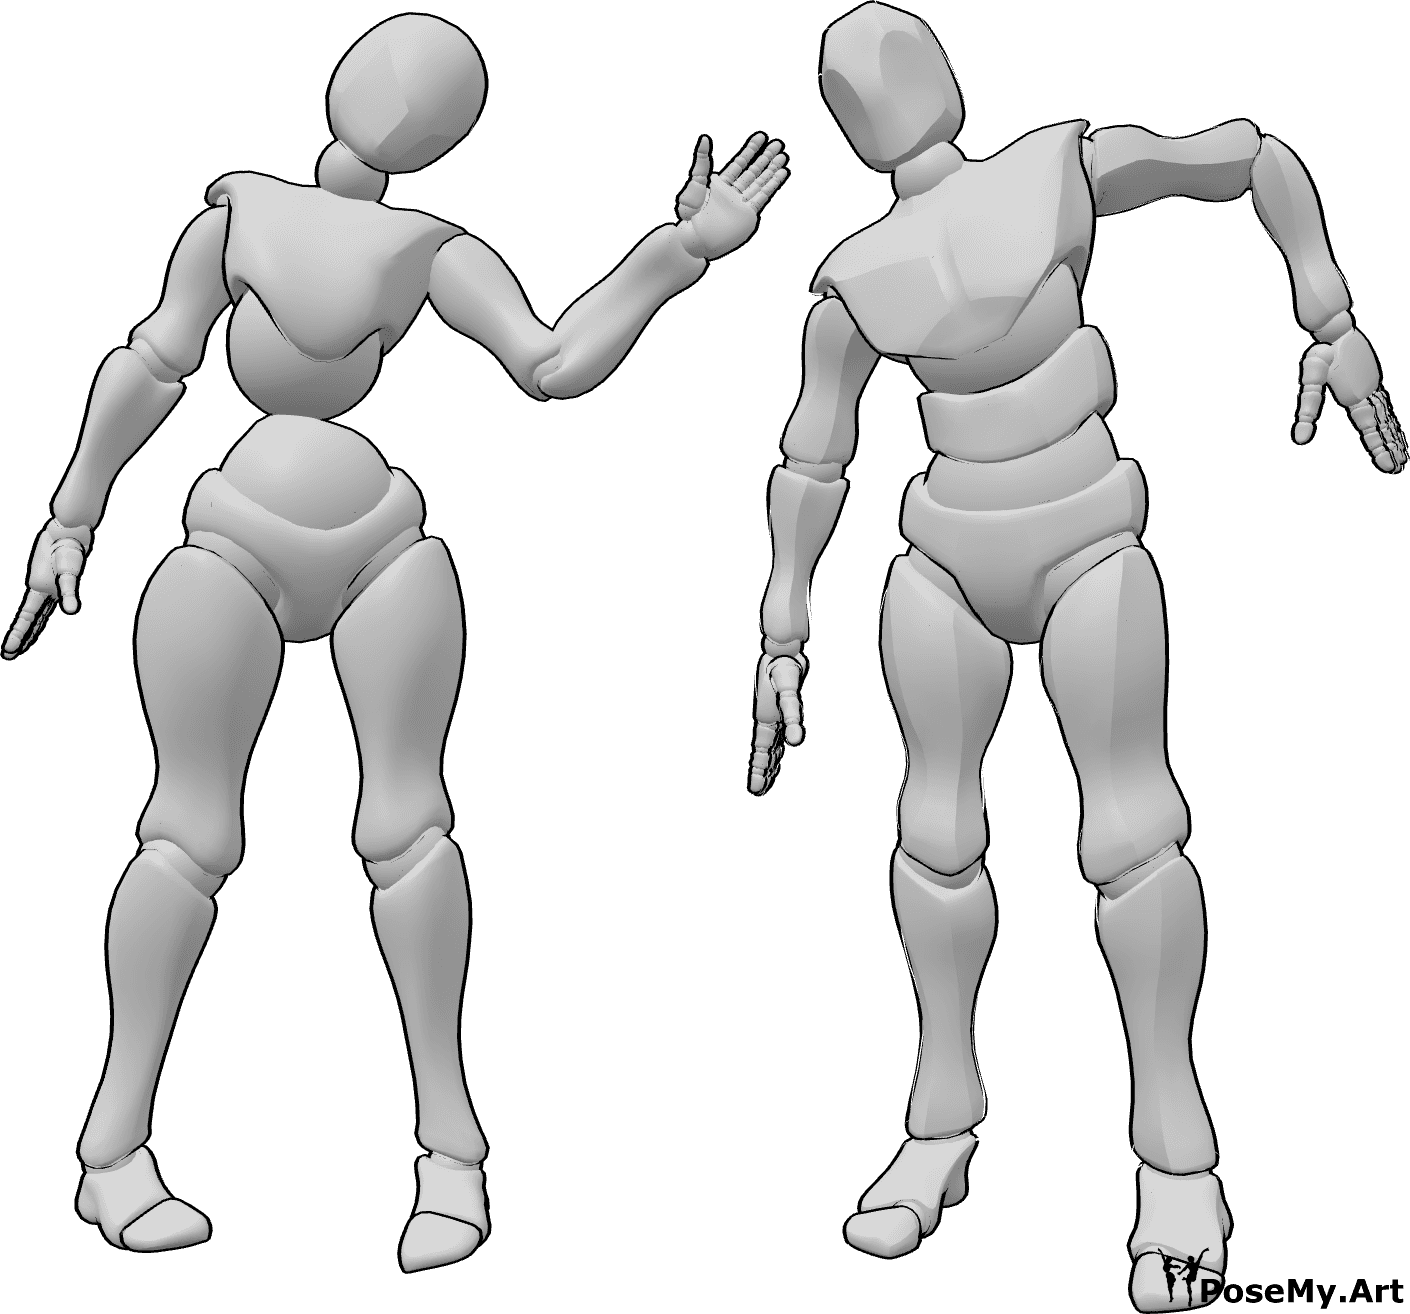 Riferimento alle pose- Inquietante posa femminile maschile - Inquietanti pose femminili e maschili da zombie ambulante